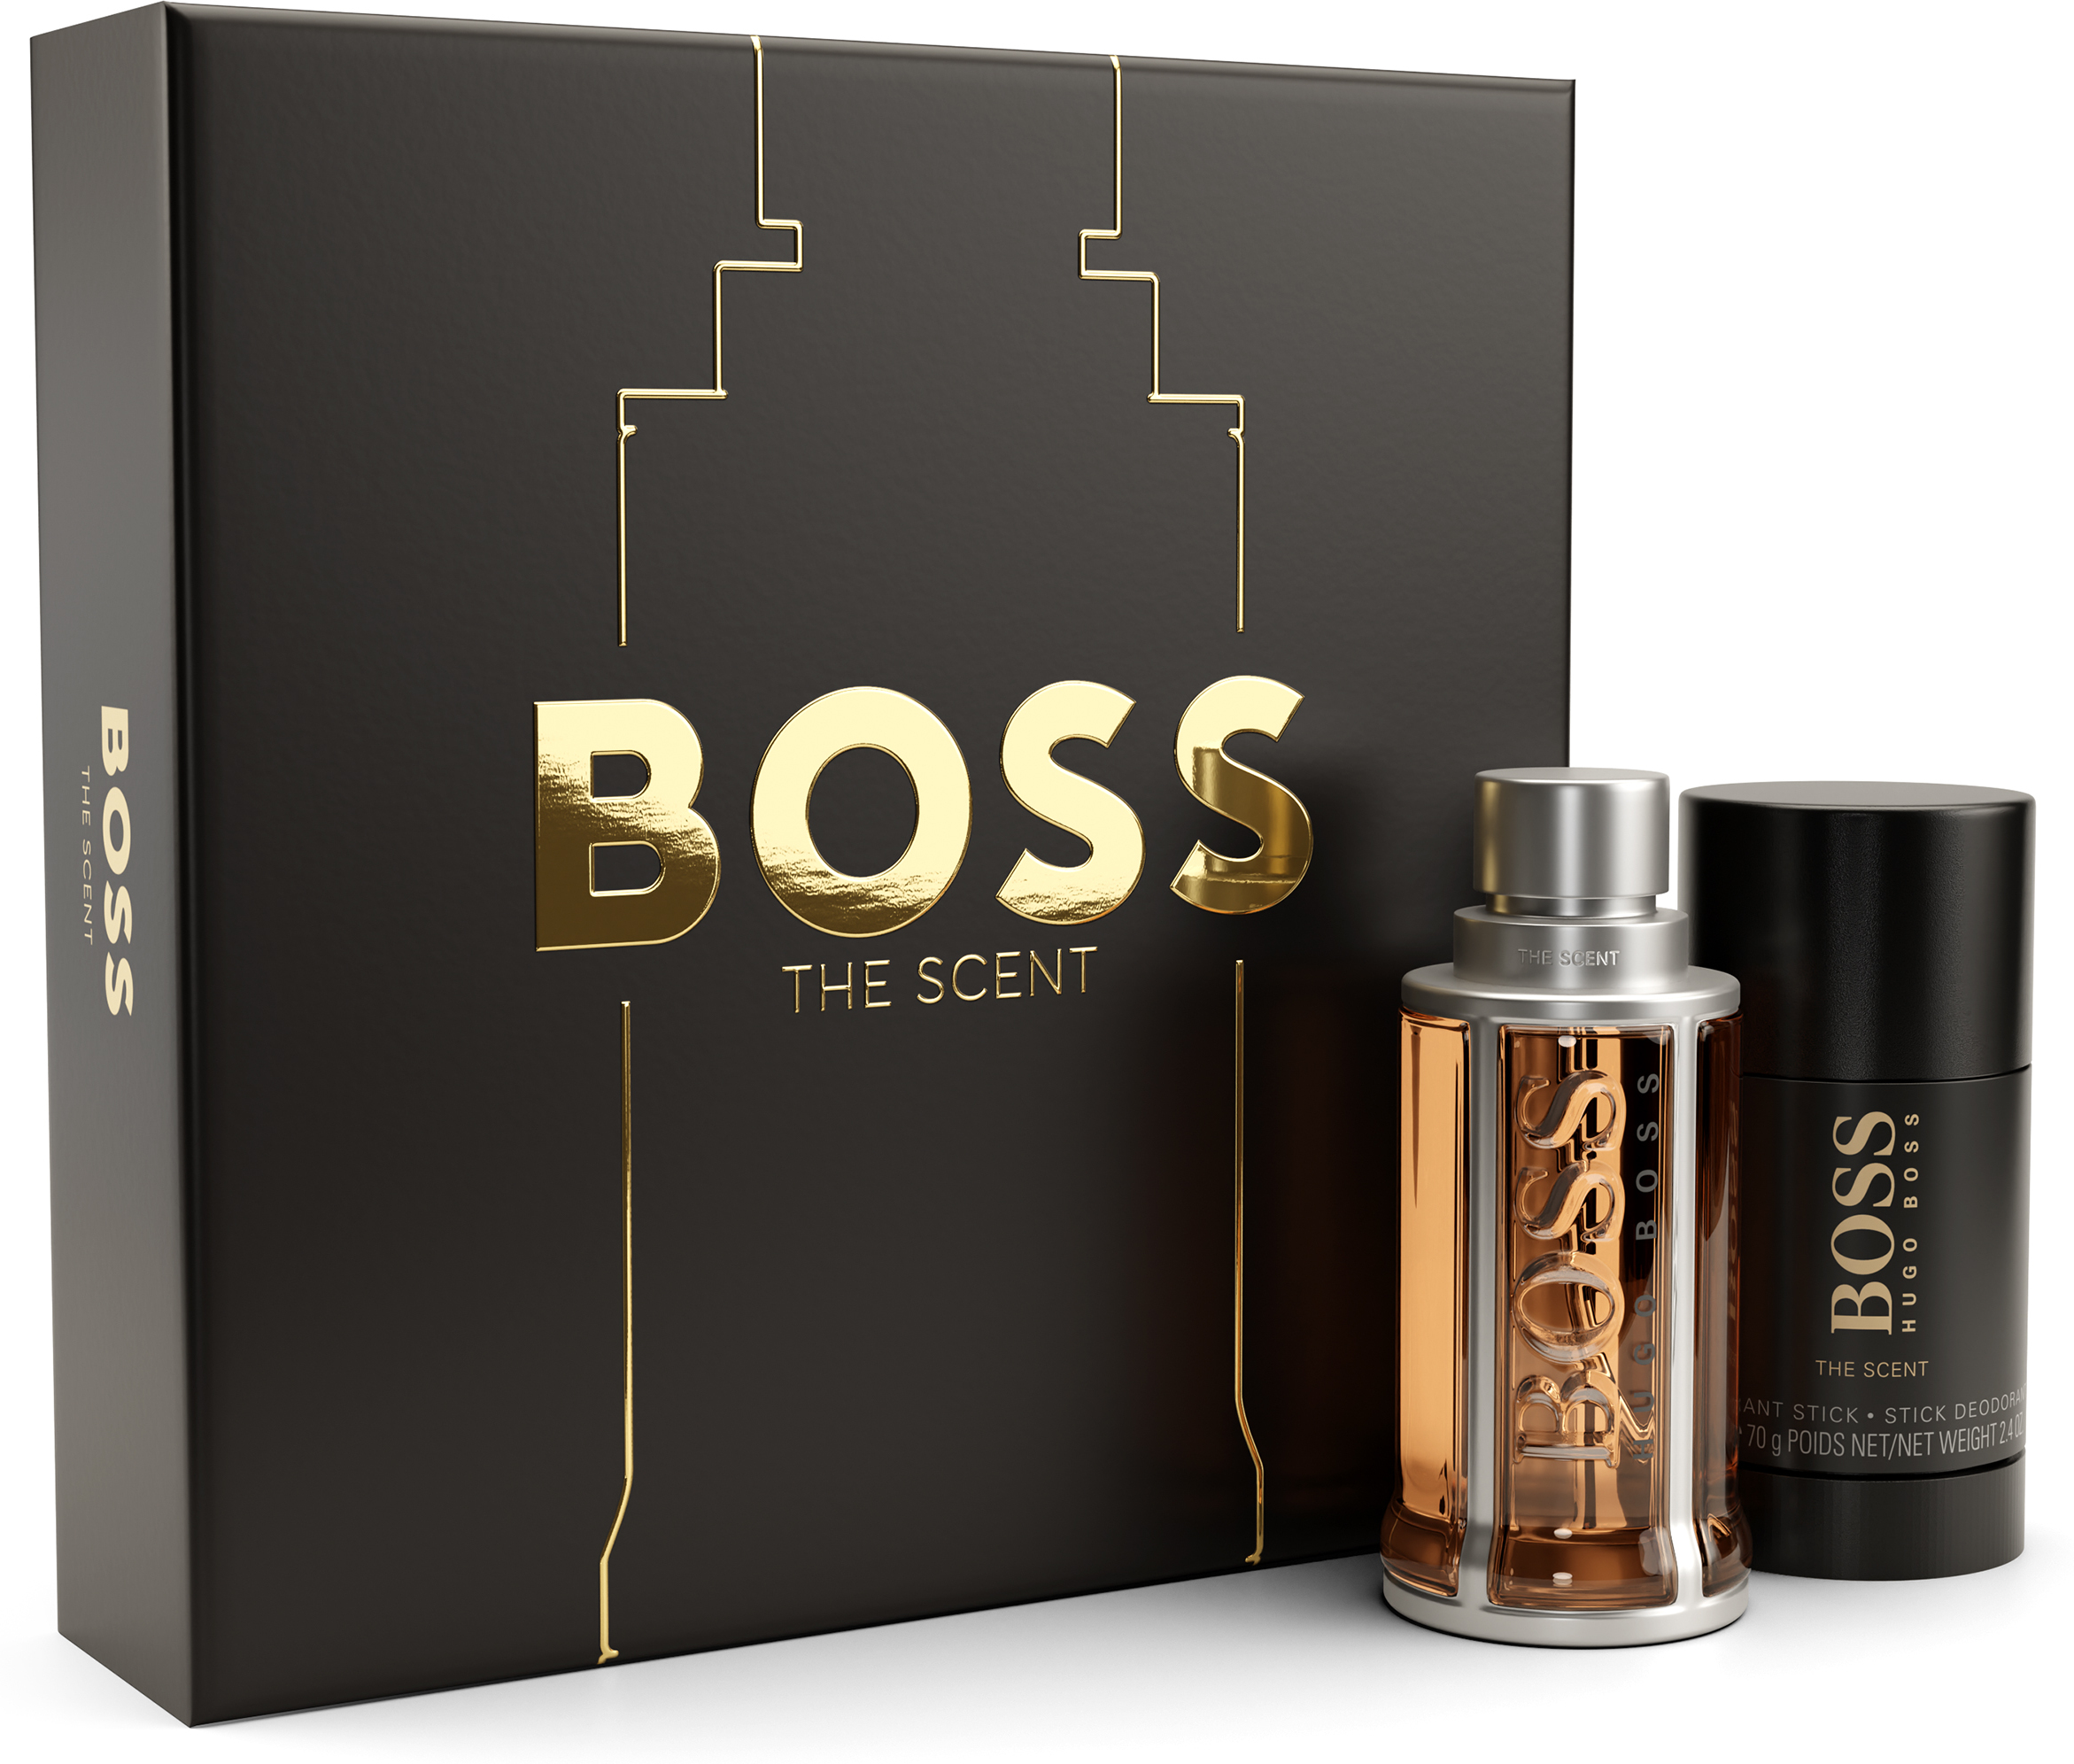 Hugo Boss Boss The Scent Eau de Toilette & Deo Stick Gift Set